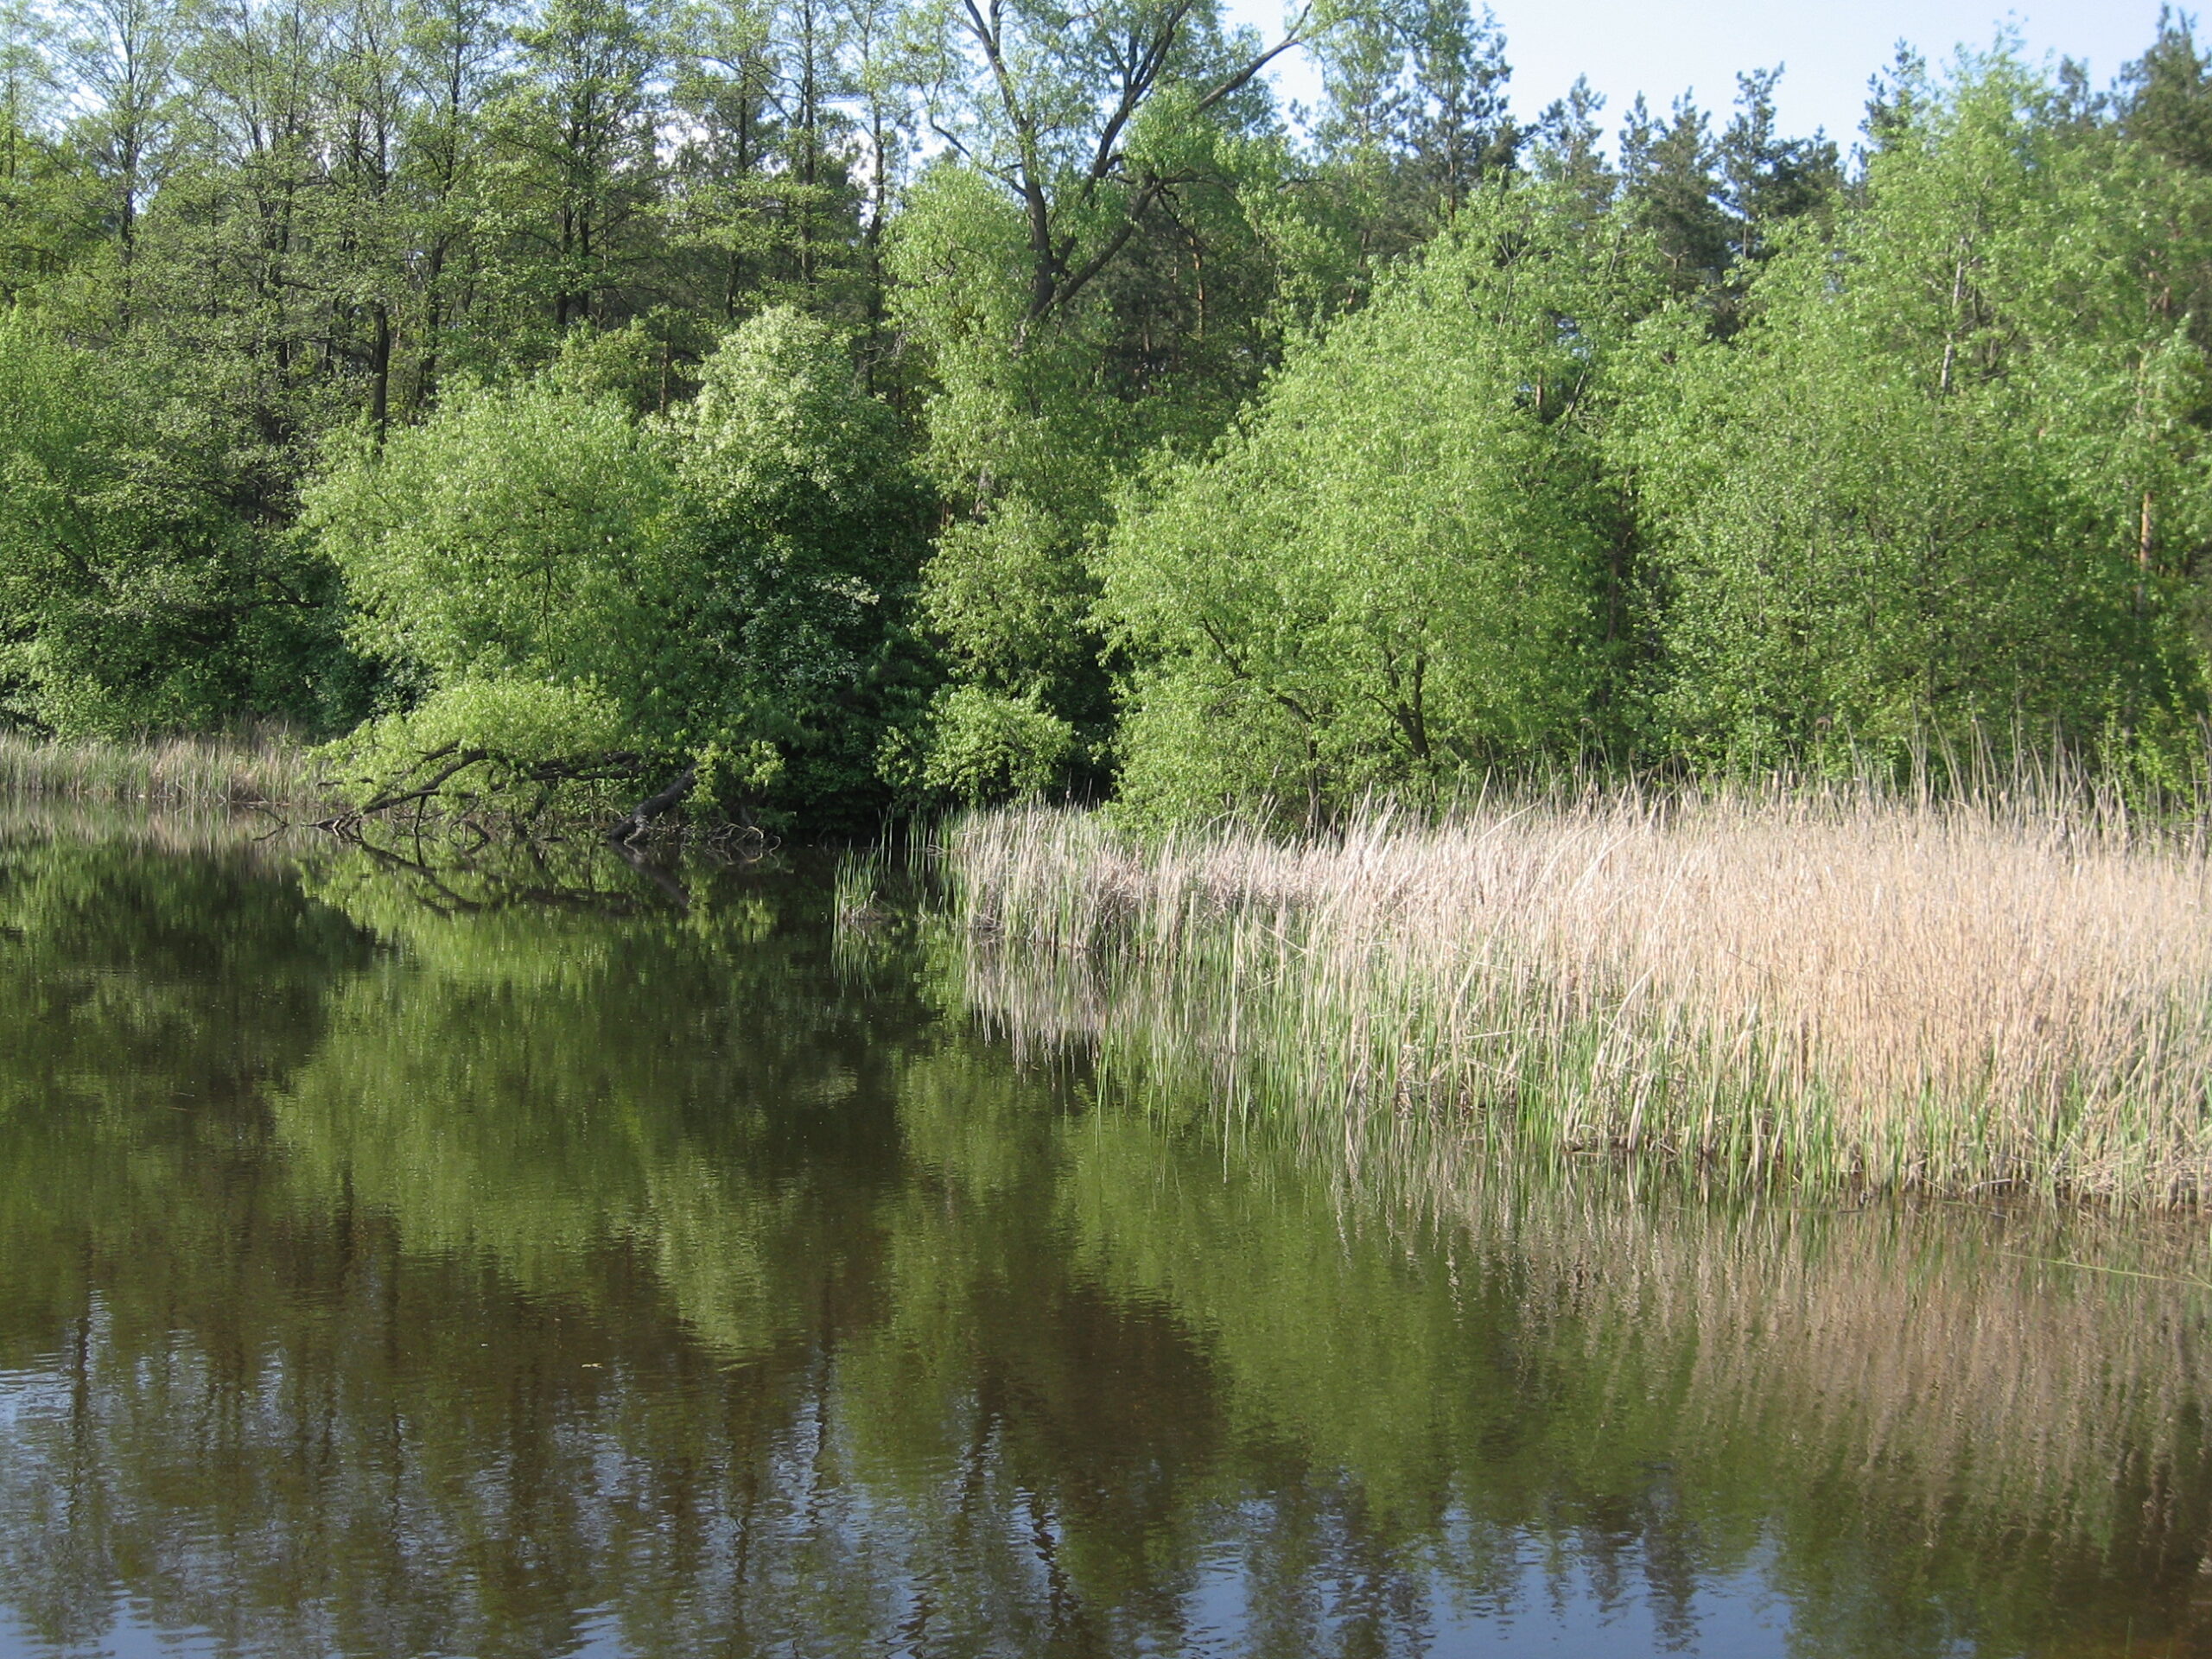 brzeg zbiornika wodnego zlokalizowanego przy szlaku turystycznym na Lubelszczyźnie. W tle nieduże drzewa, odbijają się w wodzie